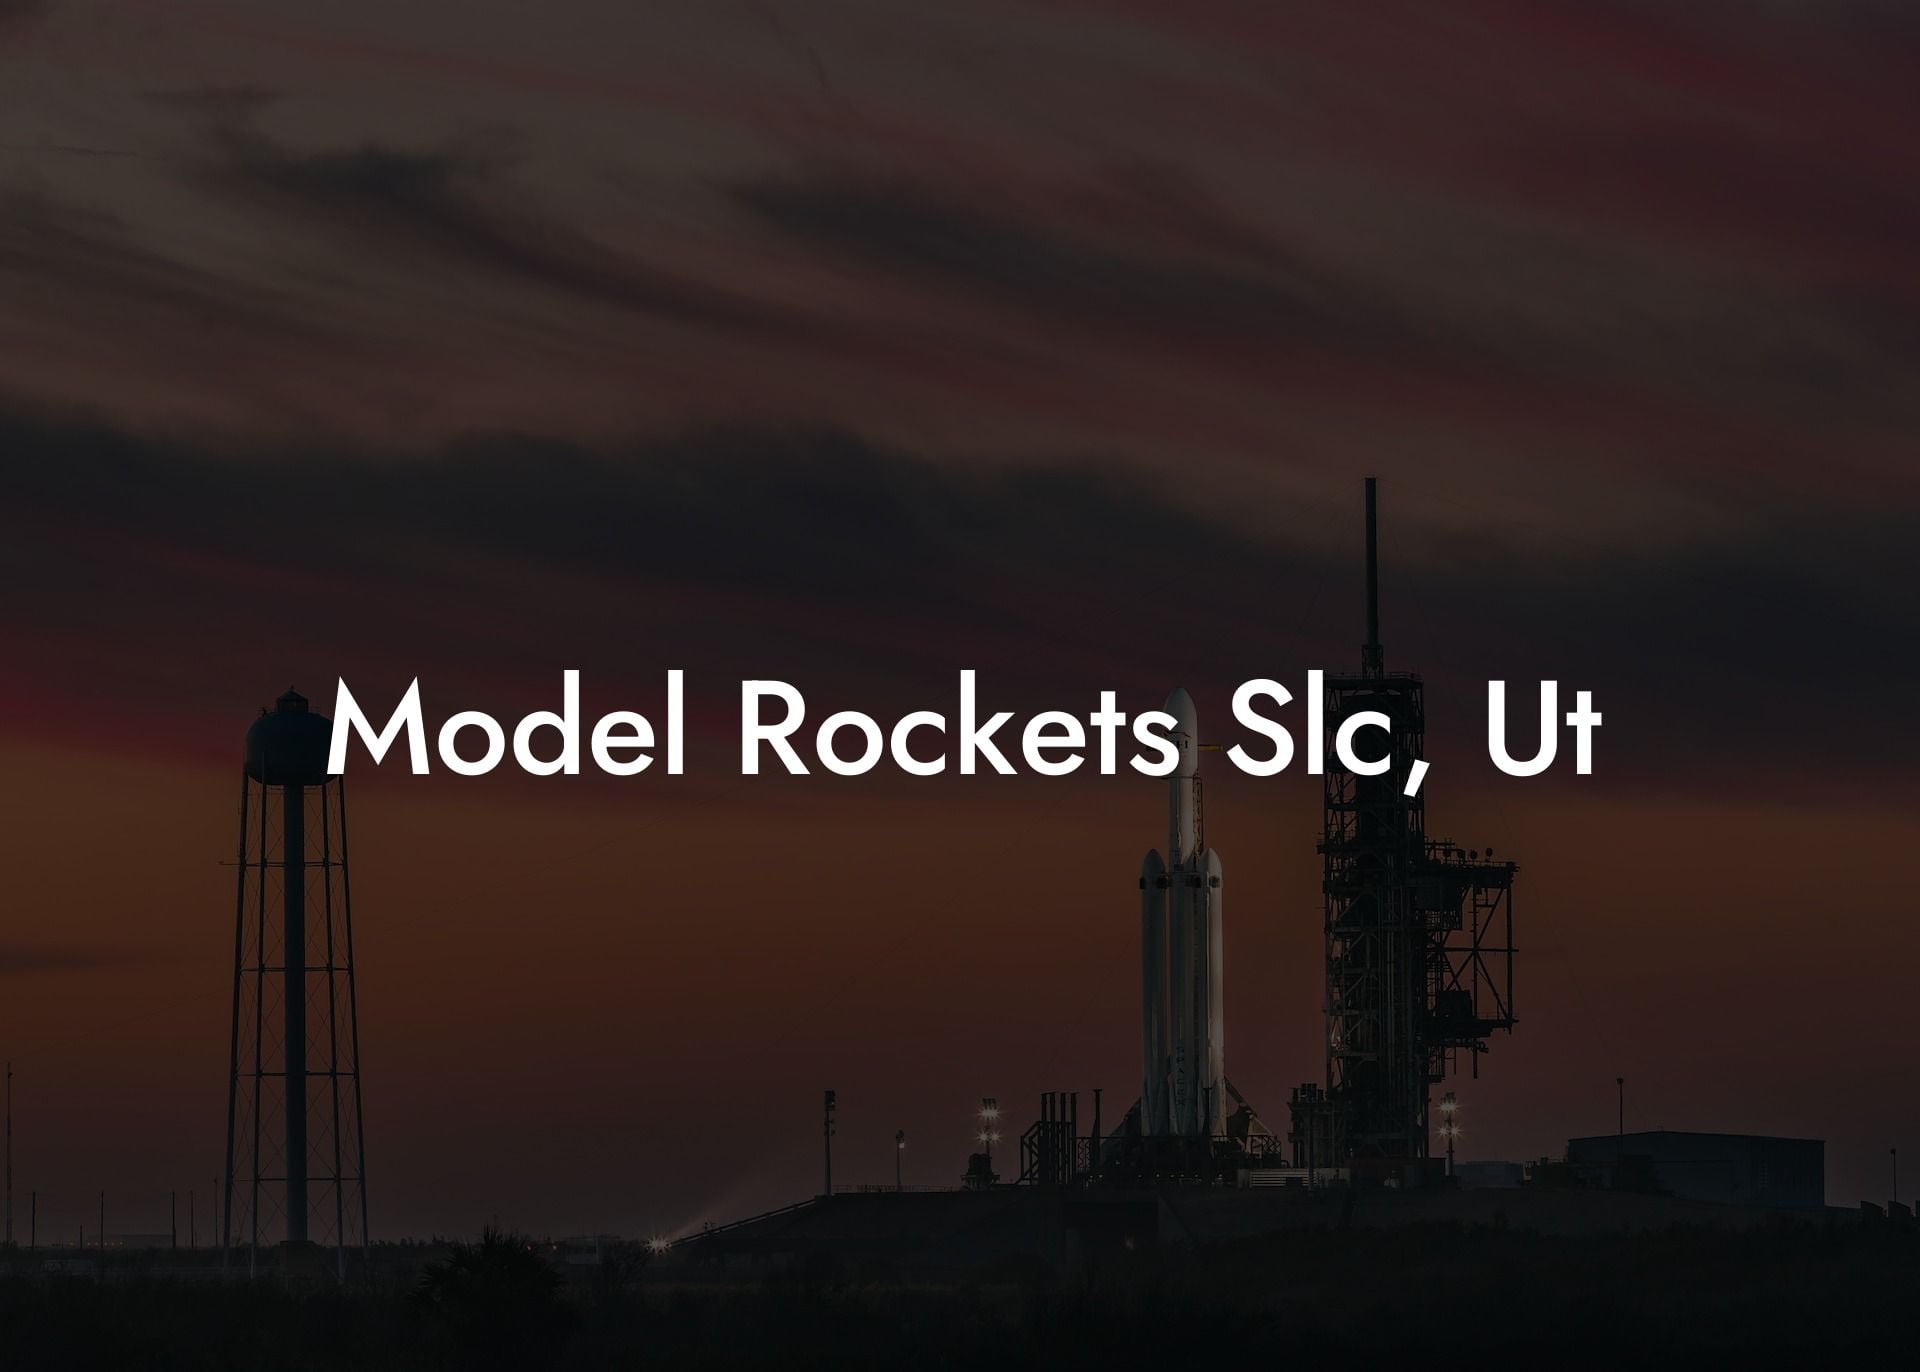 Model Rockets Slc, Ut